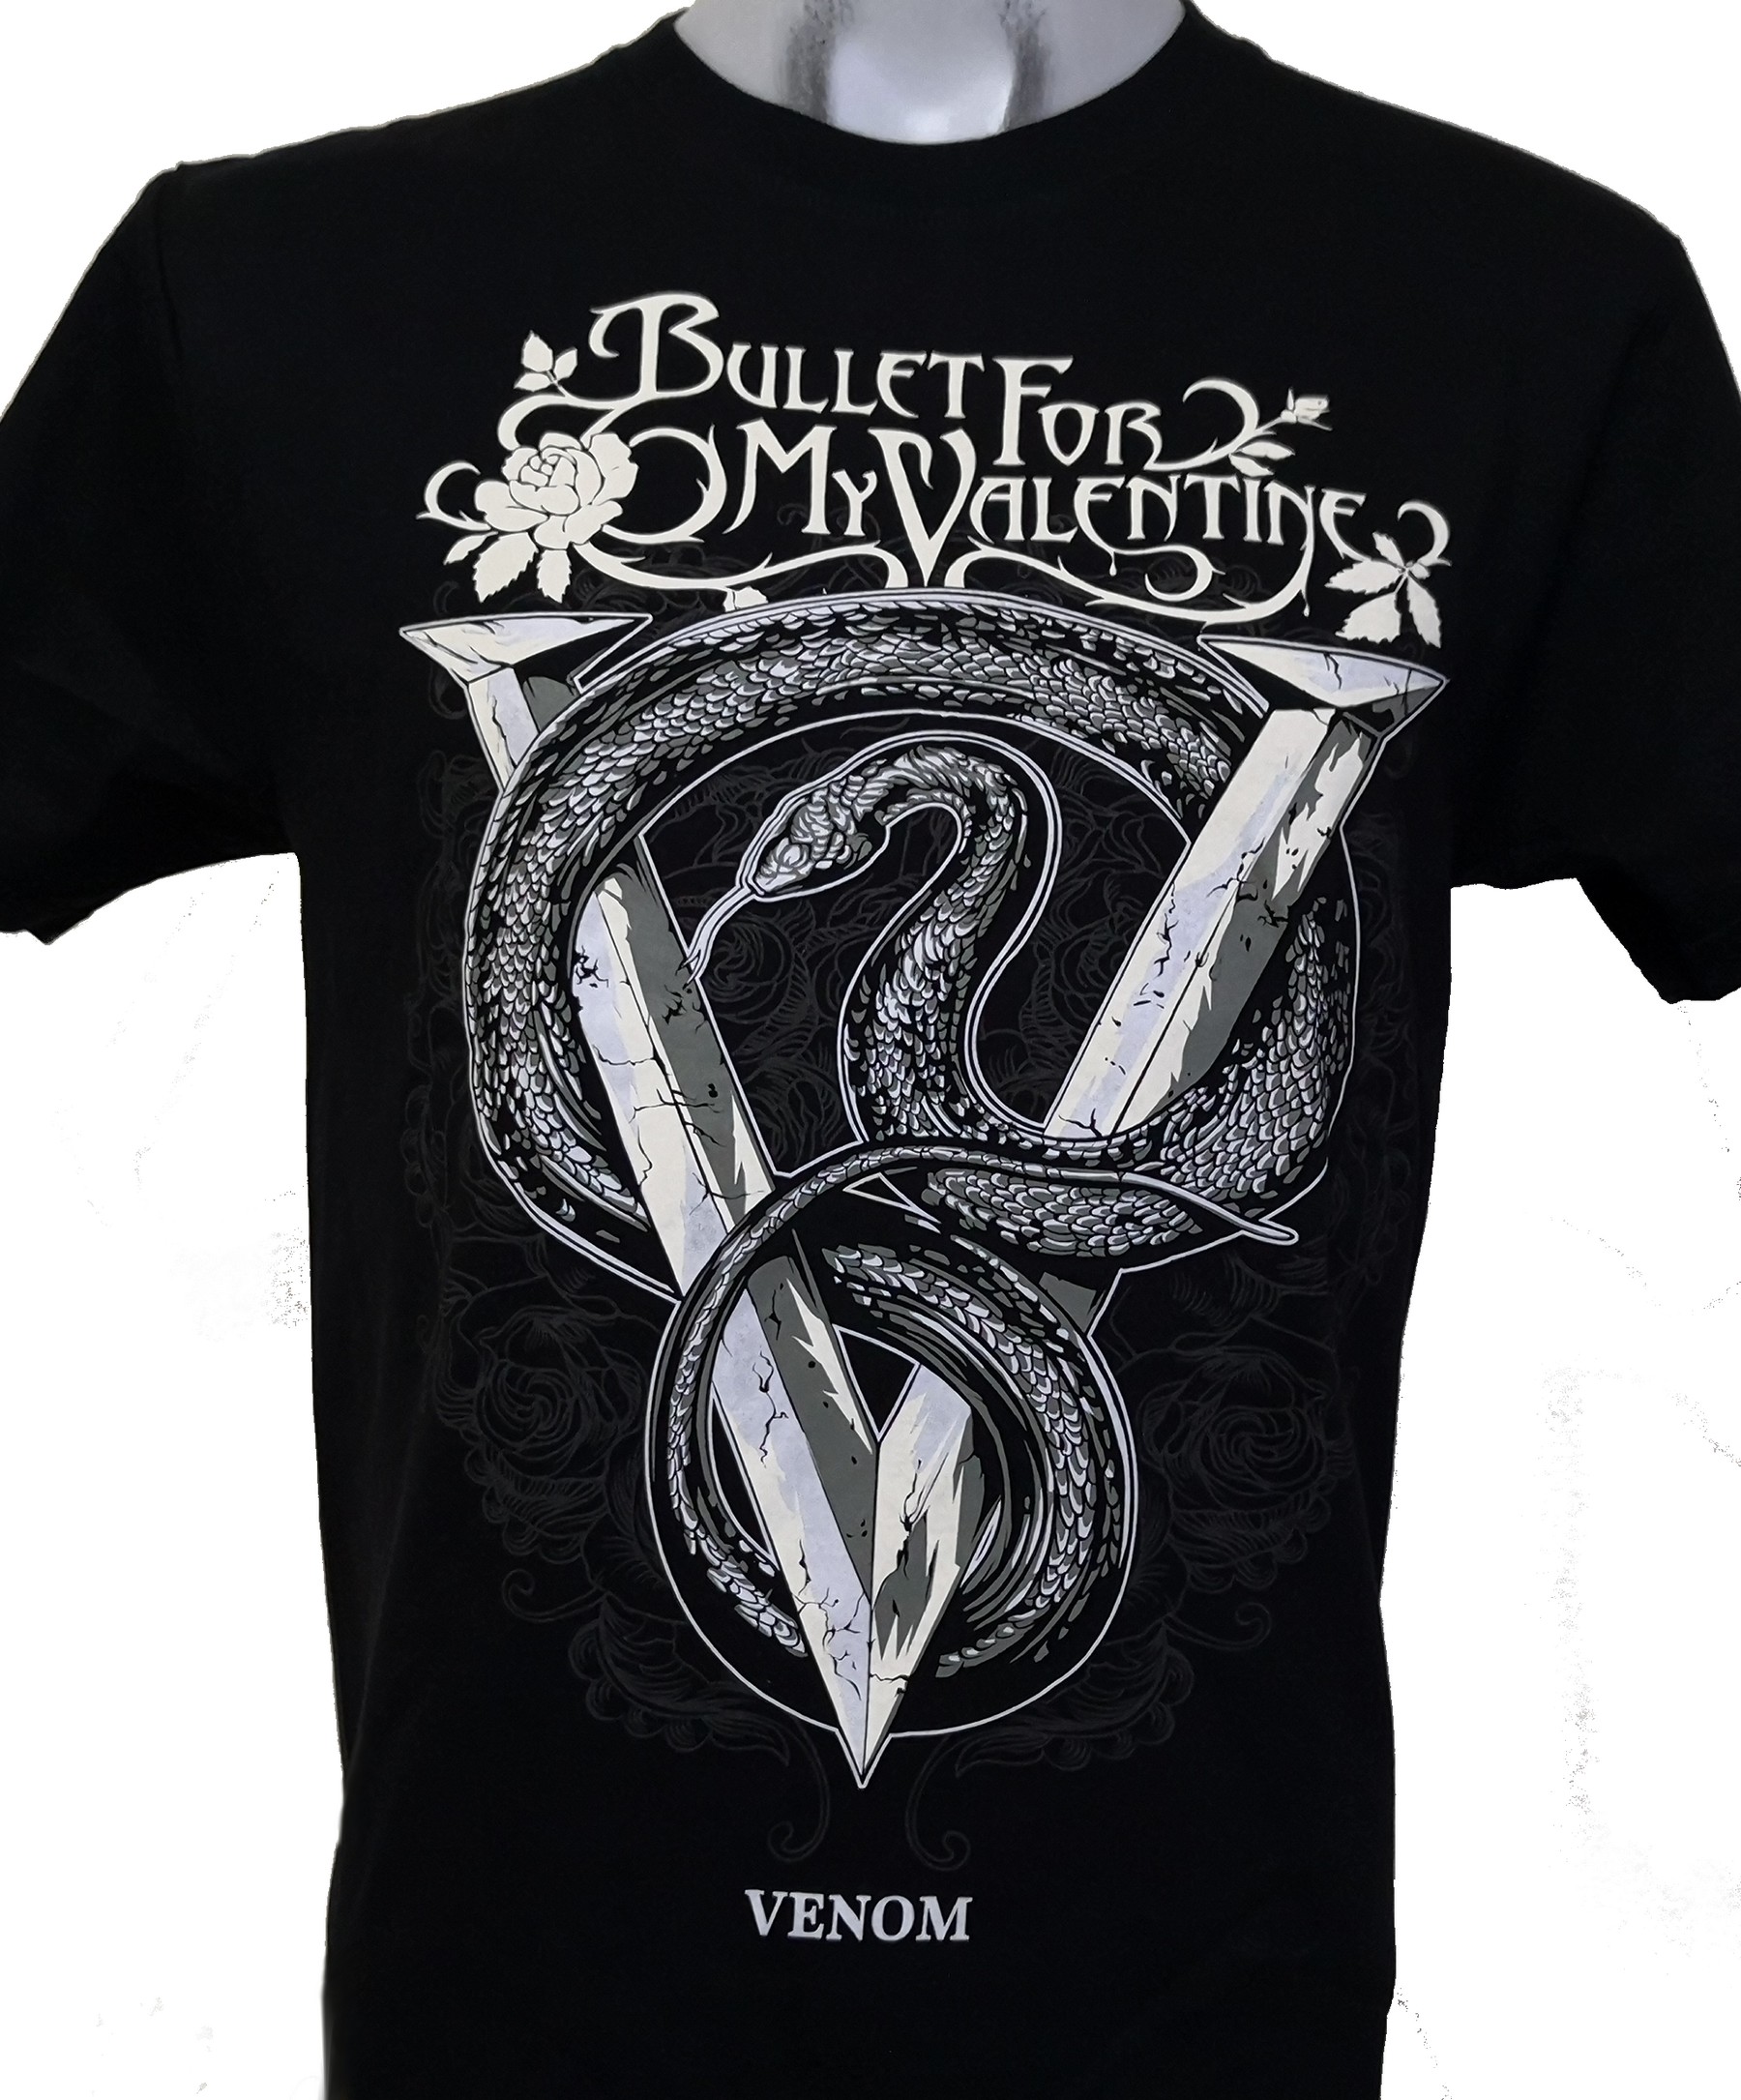 Bullet For My Valentine T Shirt Venom Size L Roxxbkk